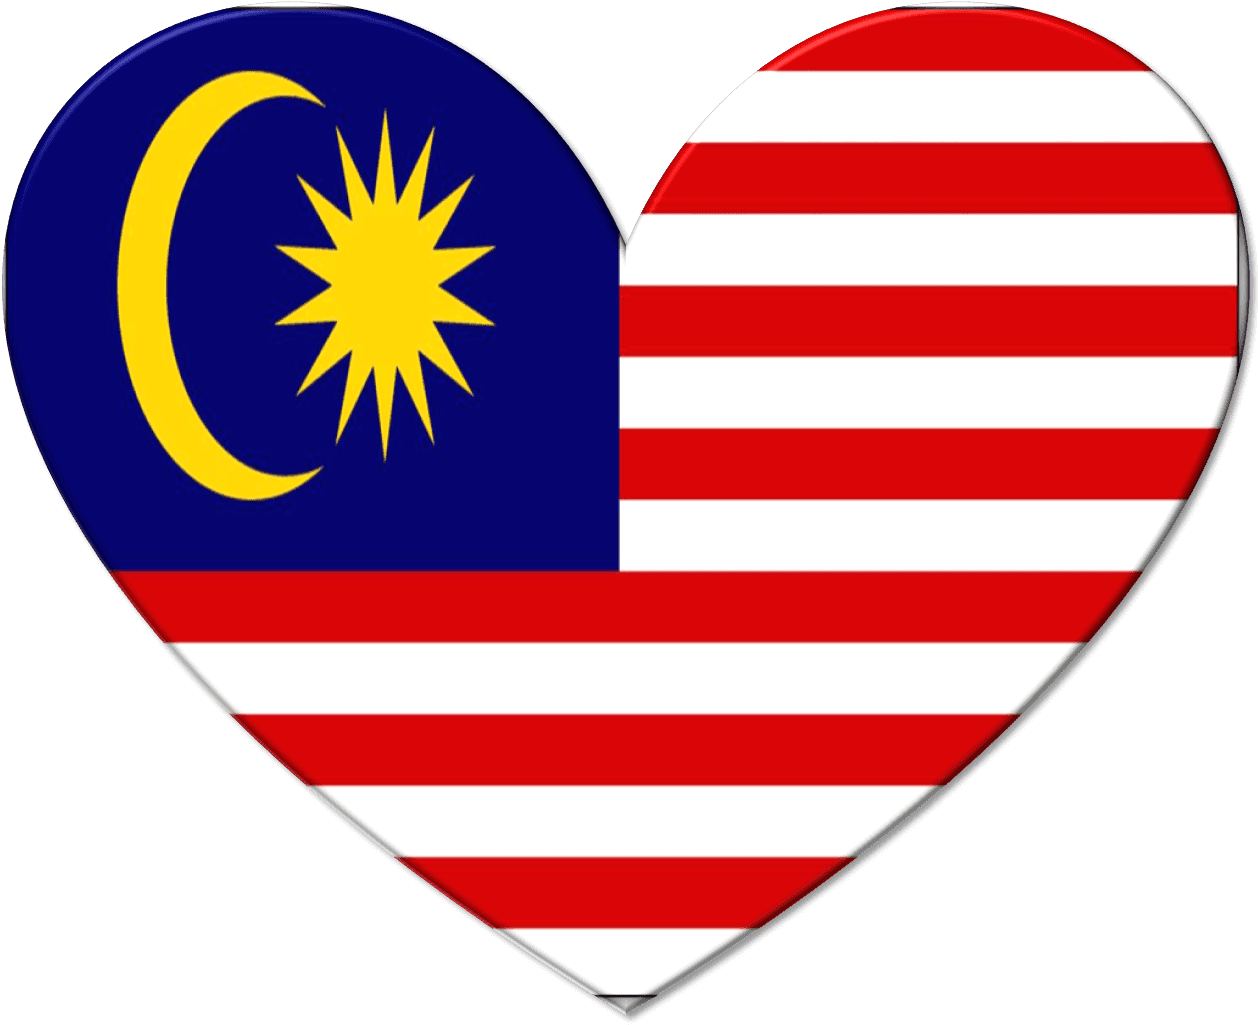 Malaysian Flag Heart Shaped